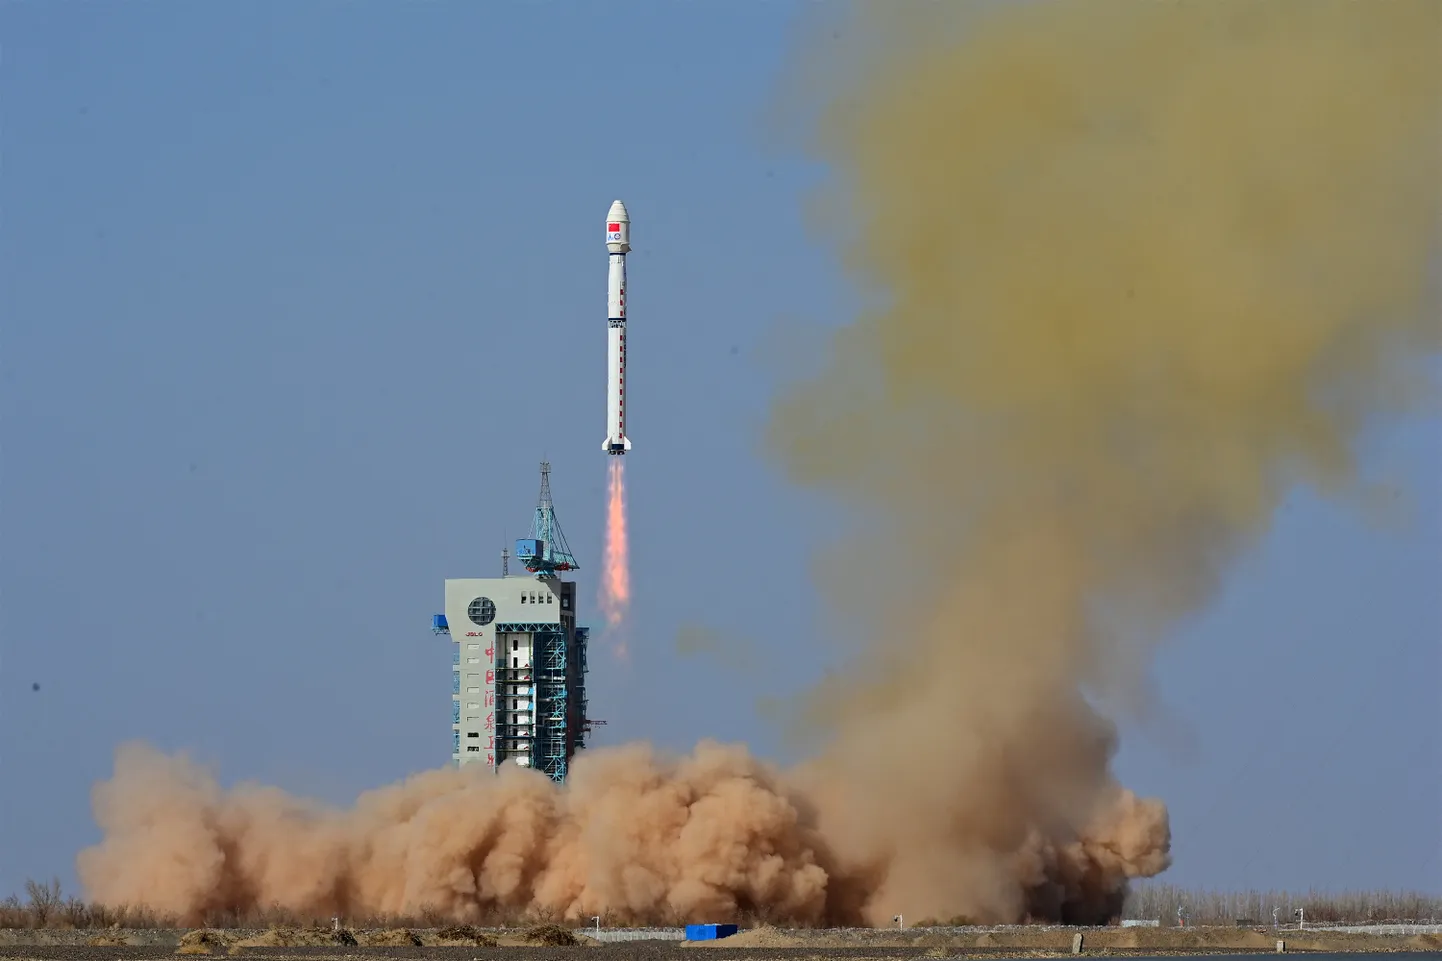 Hiina kanderakett meteoroloogiasatelliidiga Fengyun-3 07 startimas 16. aprillil.